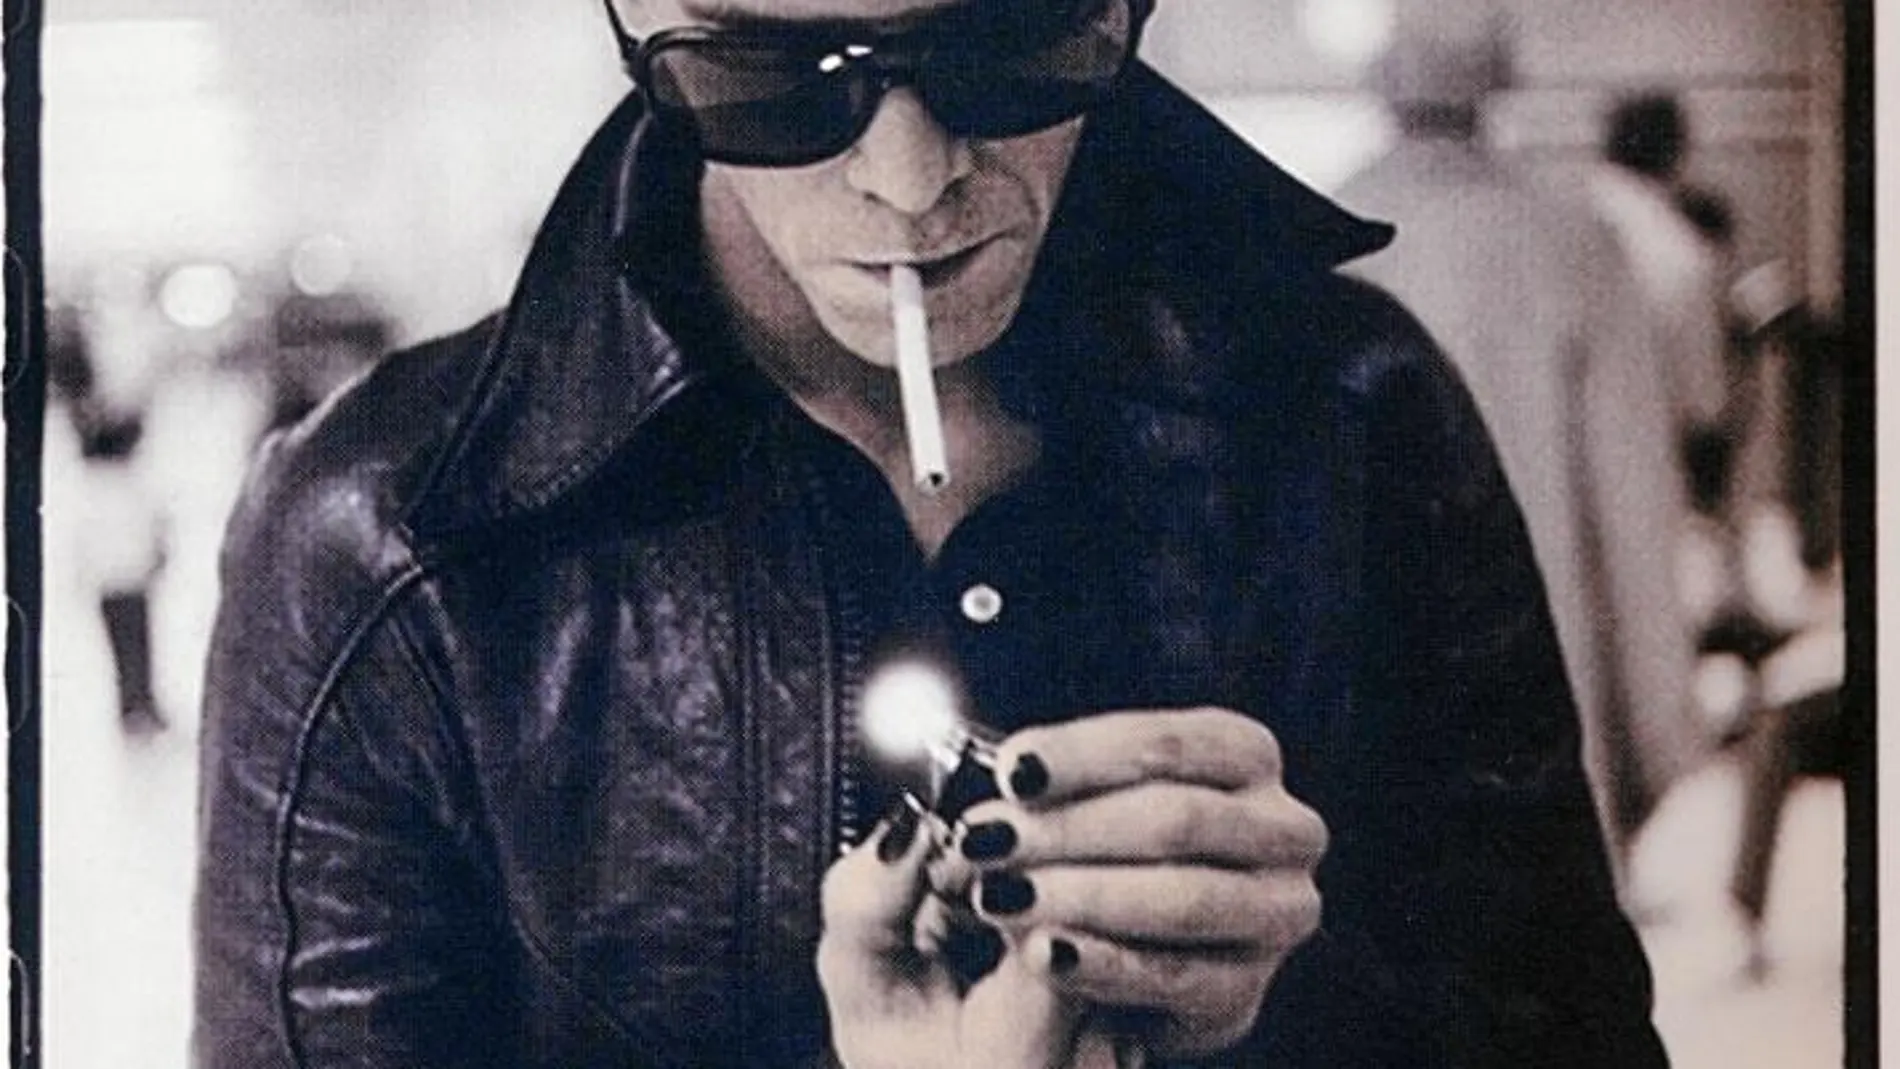 PADRINO. Lou Reed, fotografiado en su época más excesiva, la que alimentó todas sus leyendas, en una imagen reproducida en el libreto de la reedición